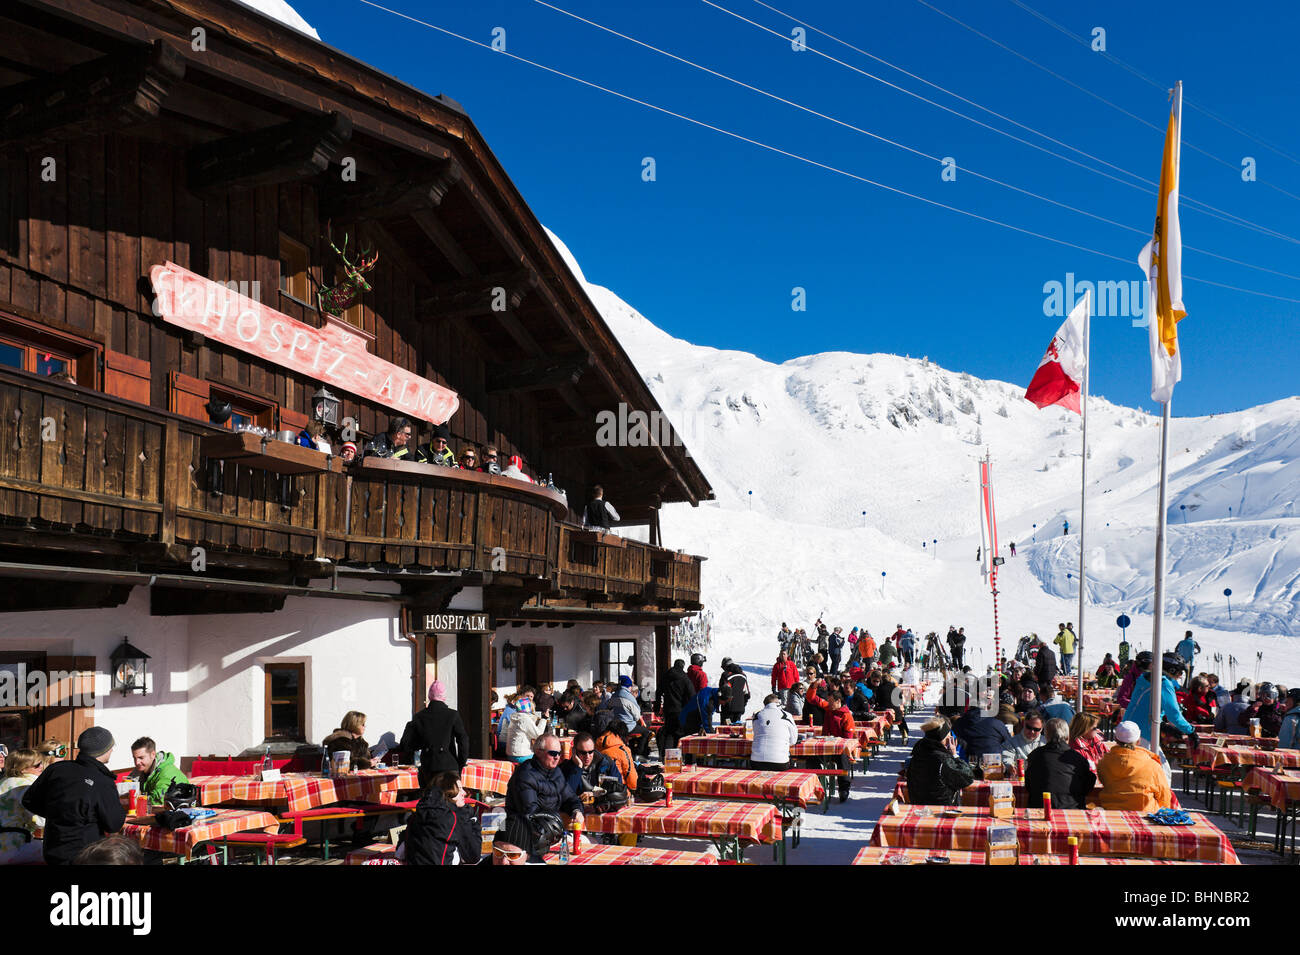 El Hospiz Alm restaurante de montaña en la parte inferior de las laderas en St Christoph, región de esquí de Arlberg, Vorarlberg, Austria Foto de stock